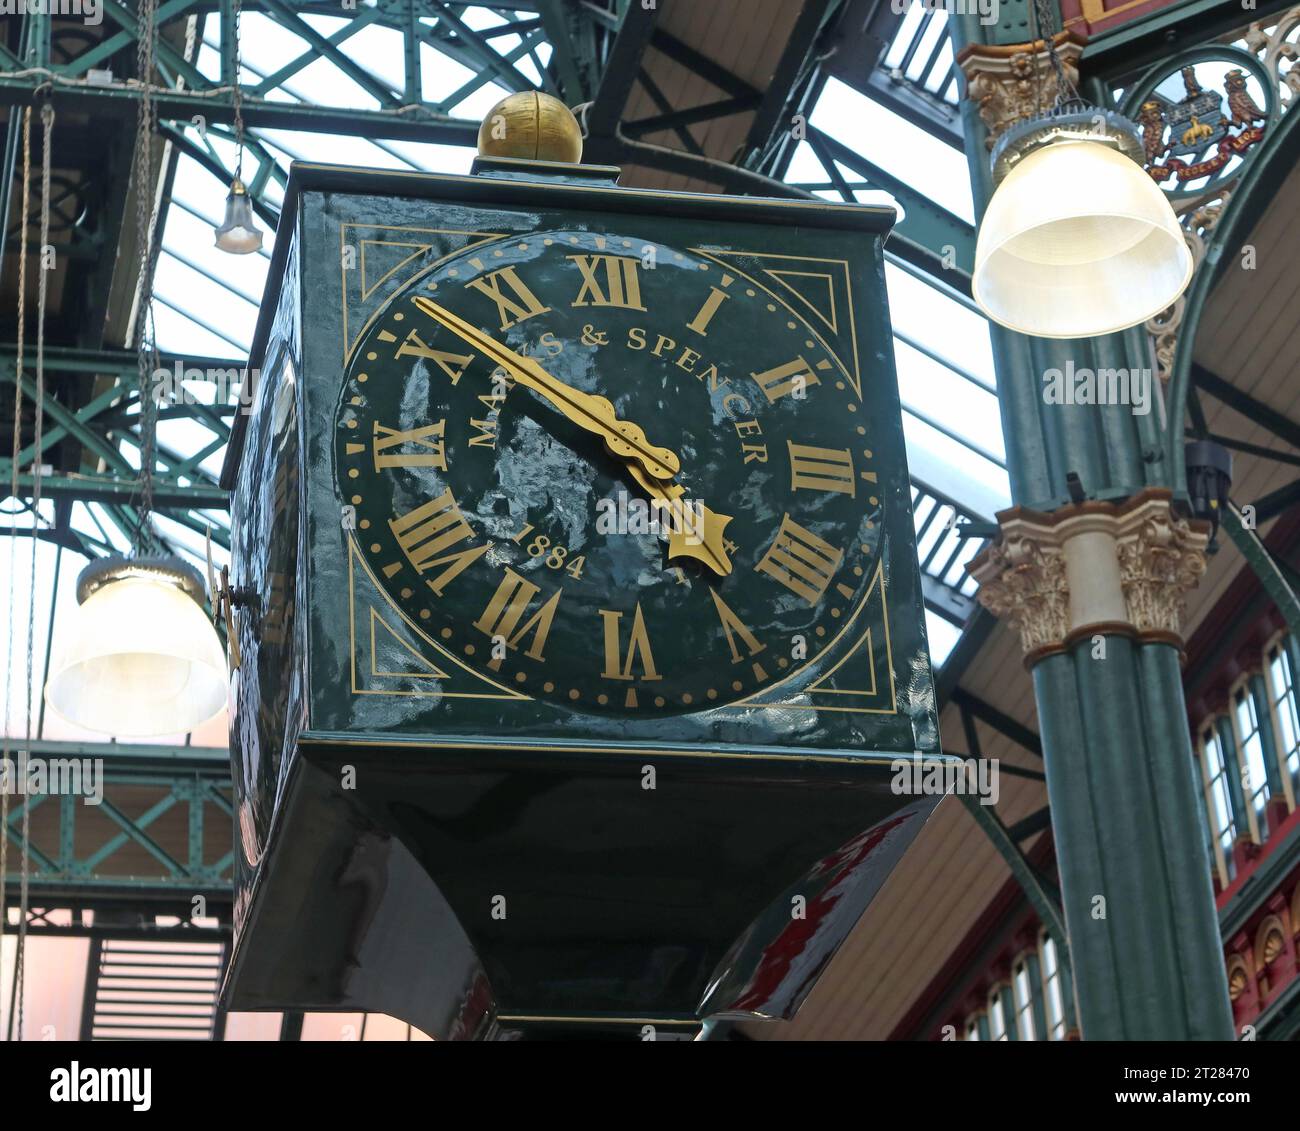 Marks & Spencers horloge originale, Leeds City Kirkgate Markets, Leeds Kirkgate Market, Kirkgate, Leeds, West Yorkshire, ANGLETERRE, ROYAUME-UNI, LS2 7HN Banque D'Images